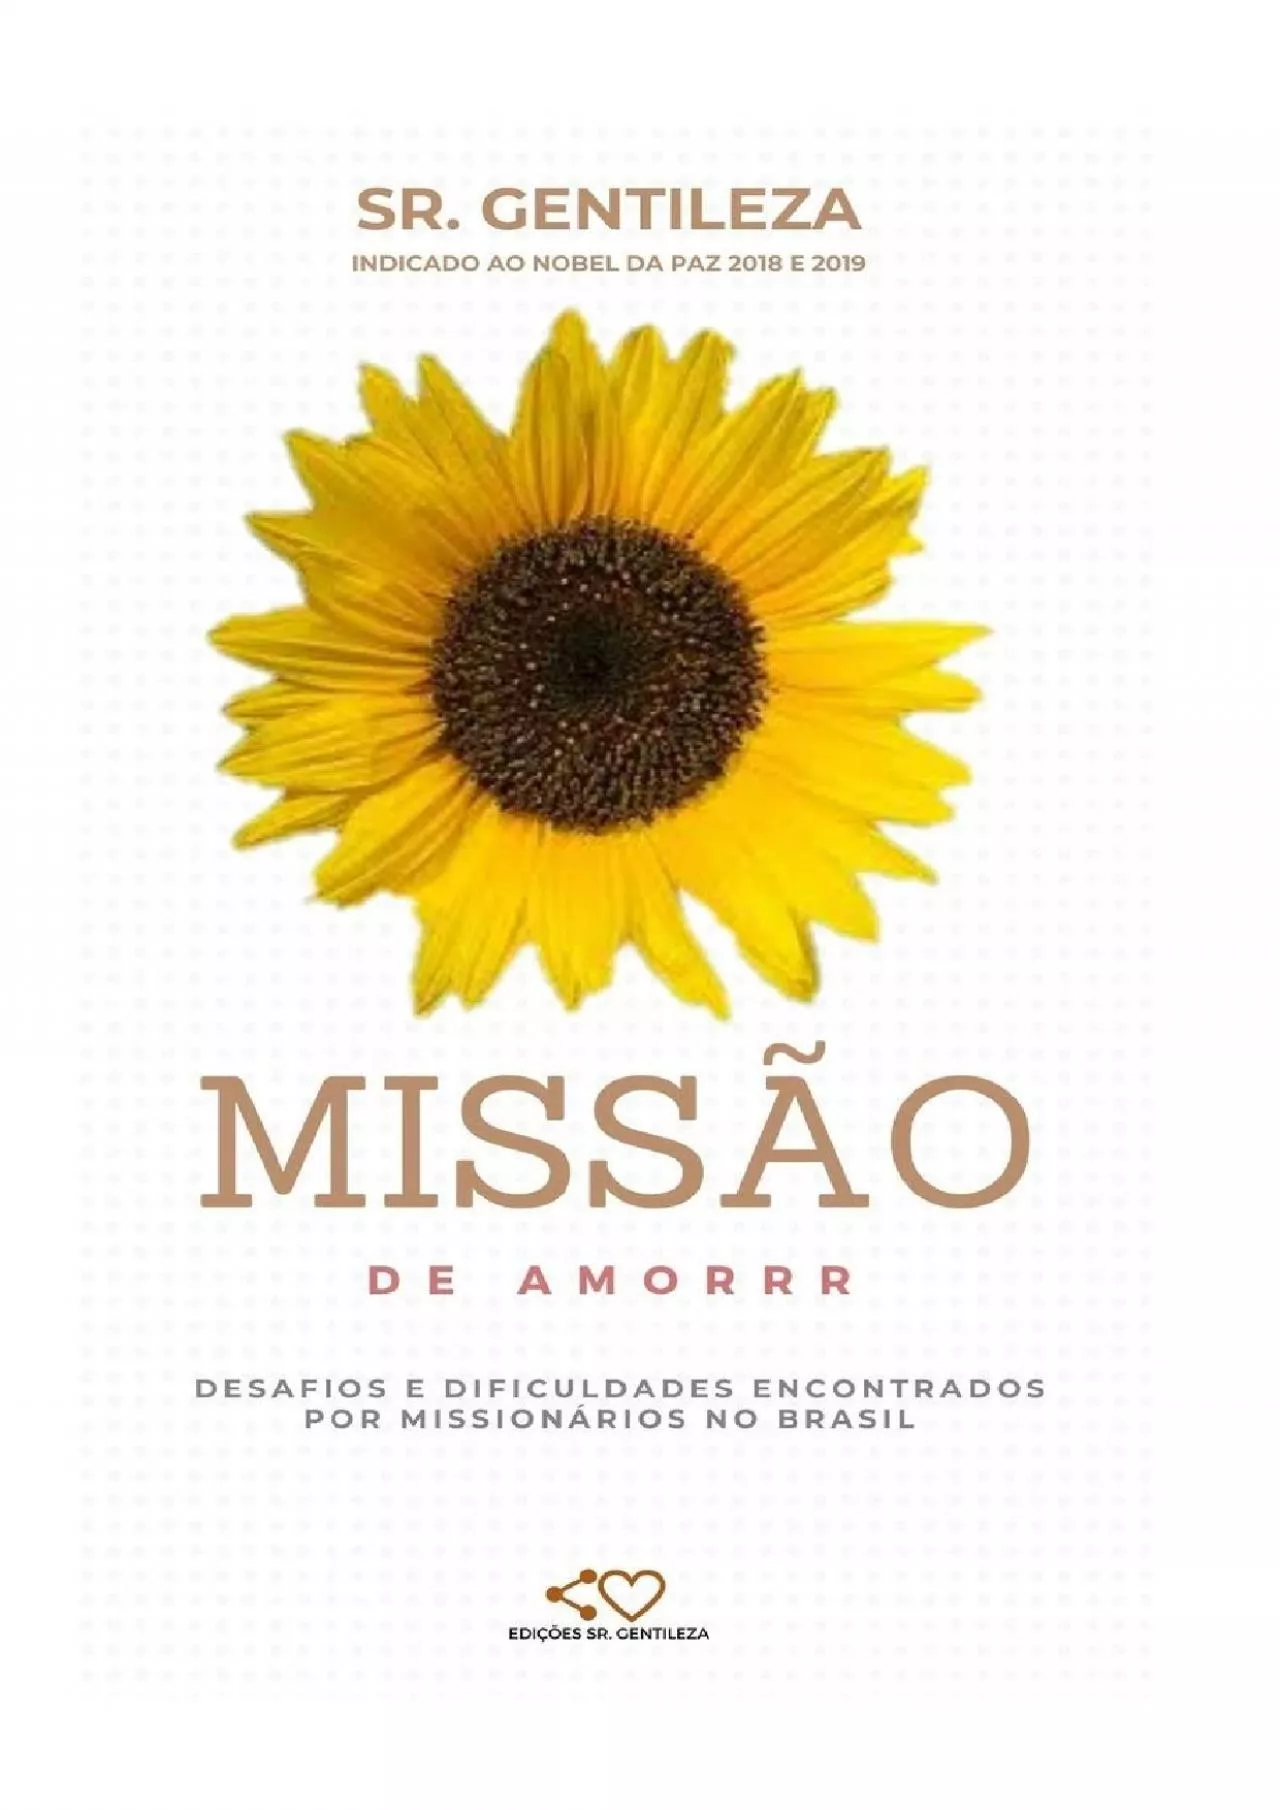 [EBOOK] MISSÃO DE AMORRR: DESAFIOS E DIFICULDADES ENCONTRADOS POR MISSIONÁRIOS NO BRASIL